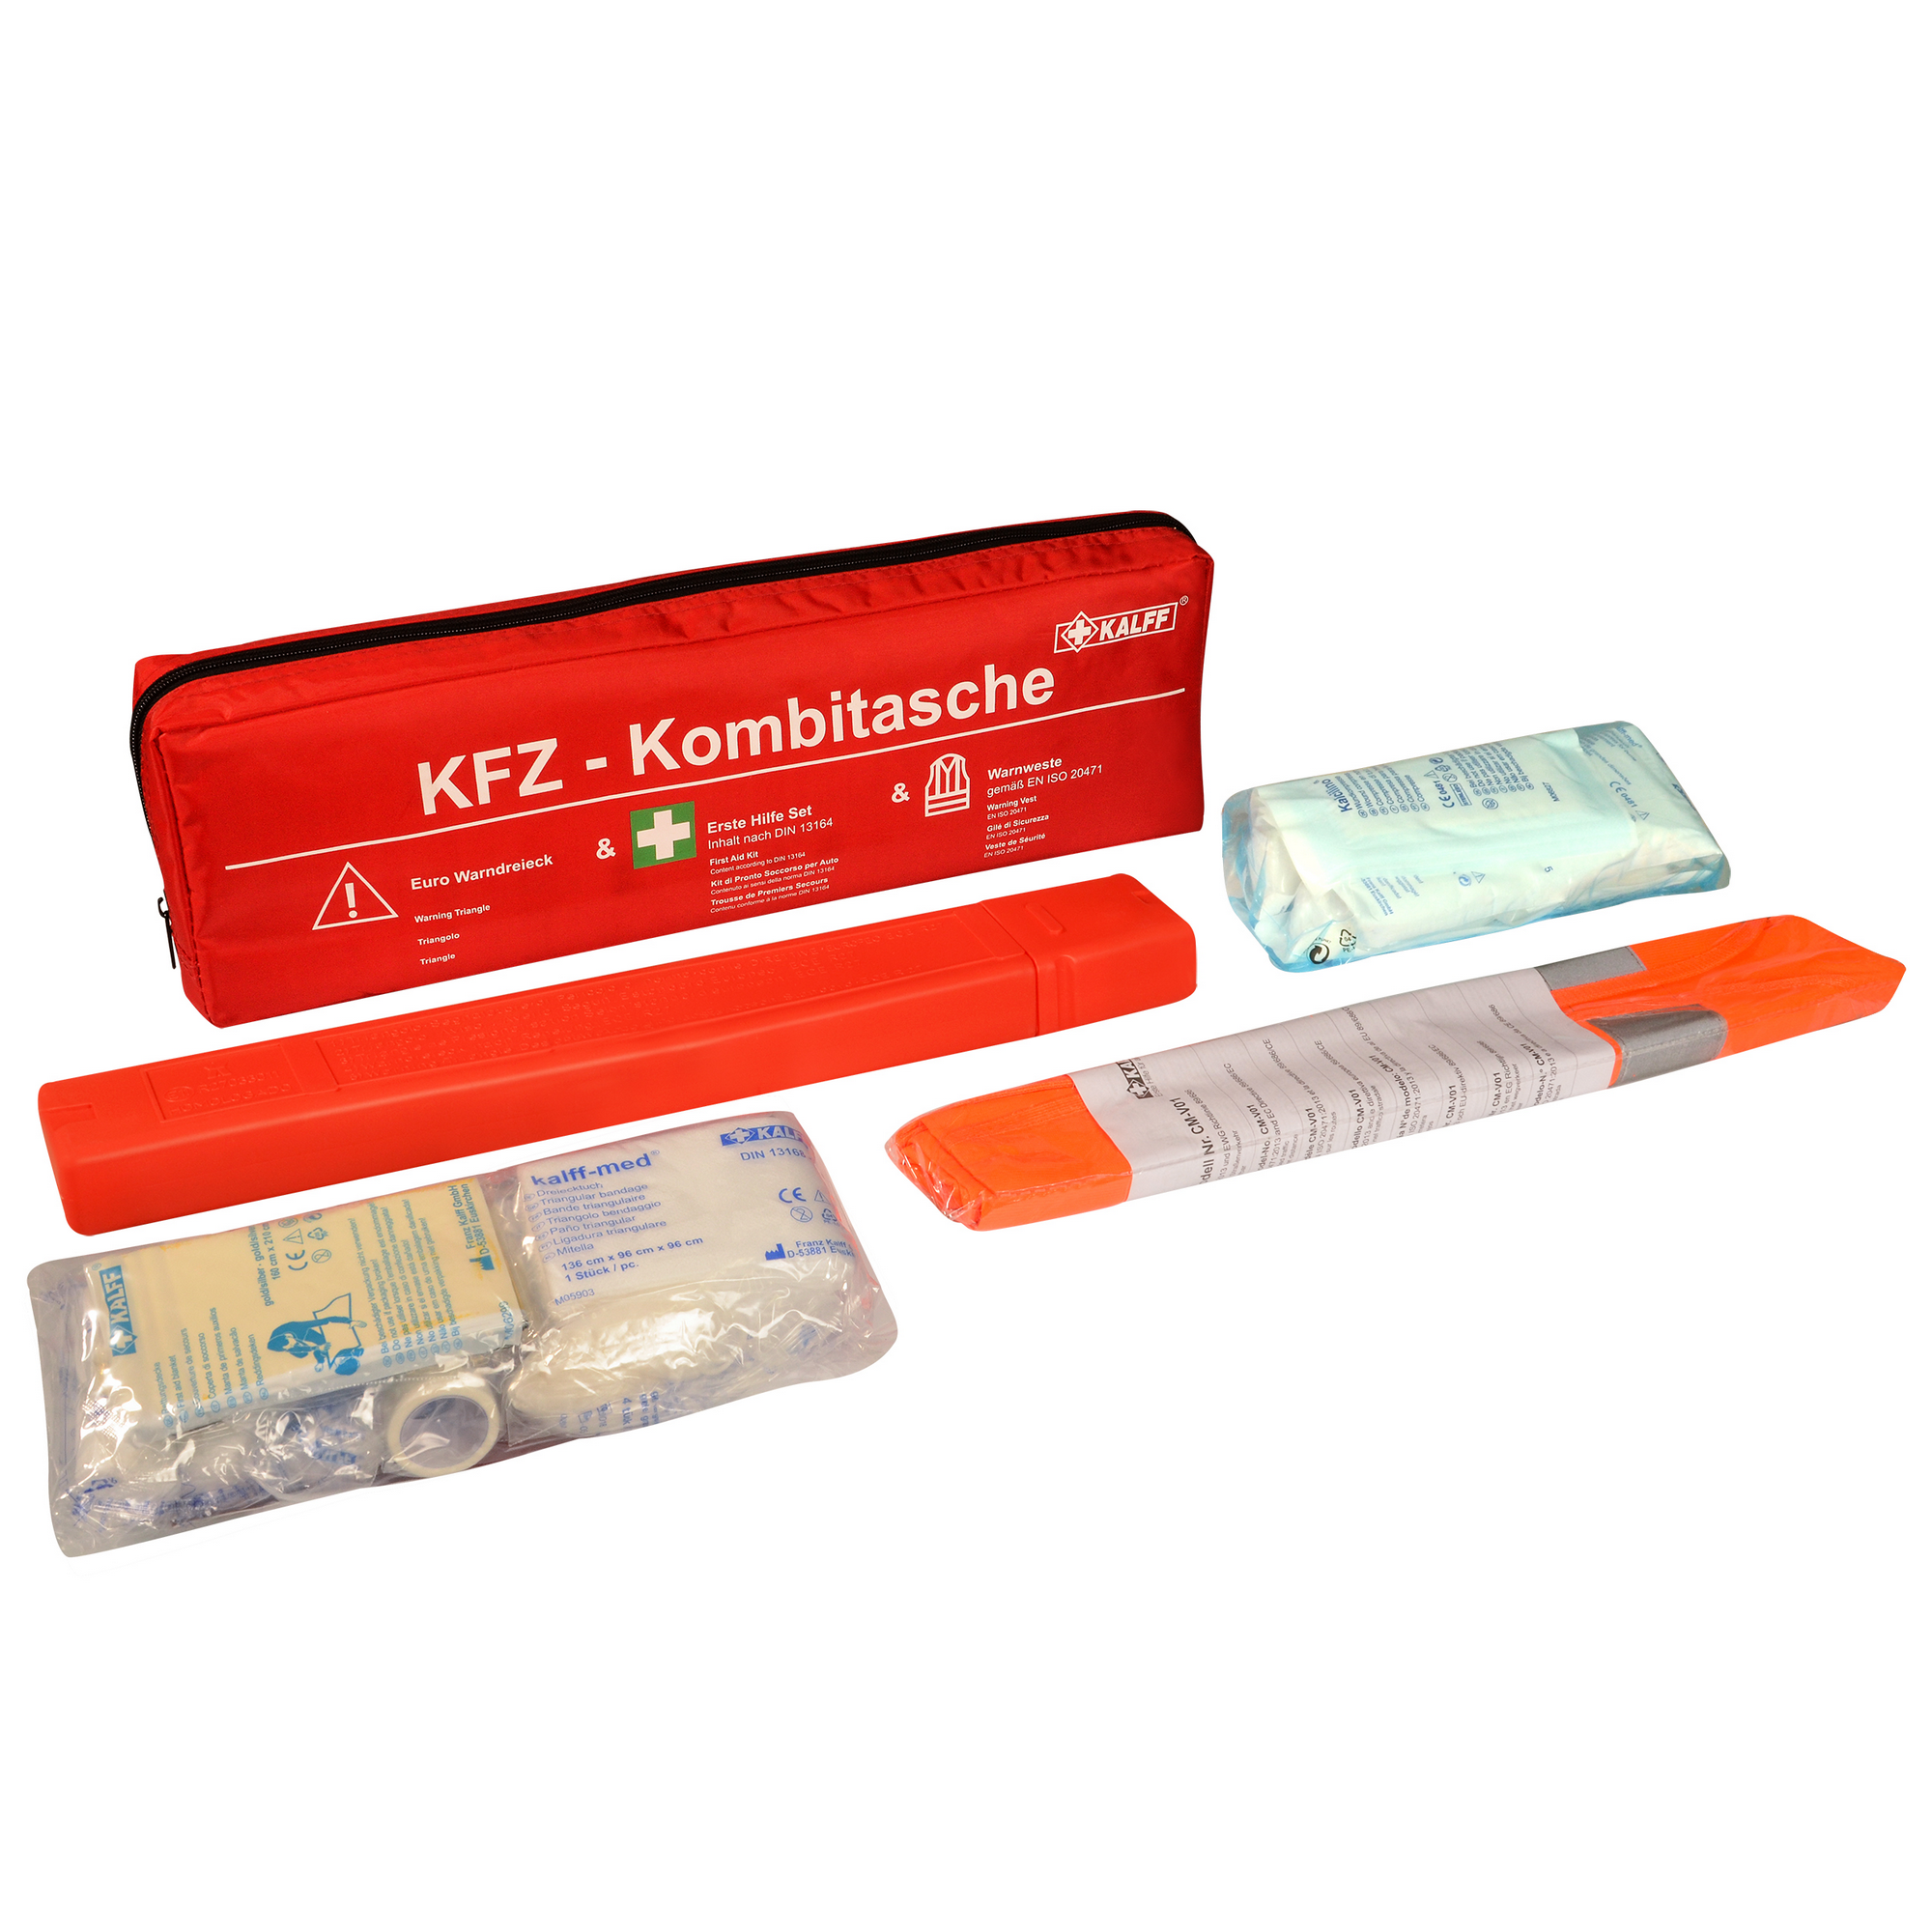 KFZ-Kombitasche 'Trio Compact' mit Warnweste und Warndreieck + product picture